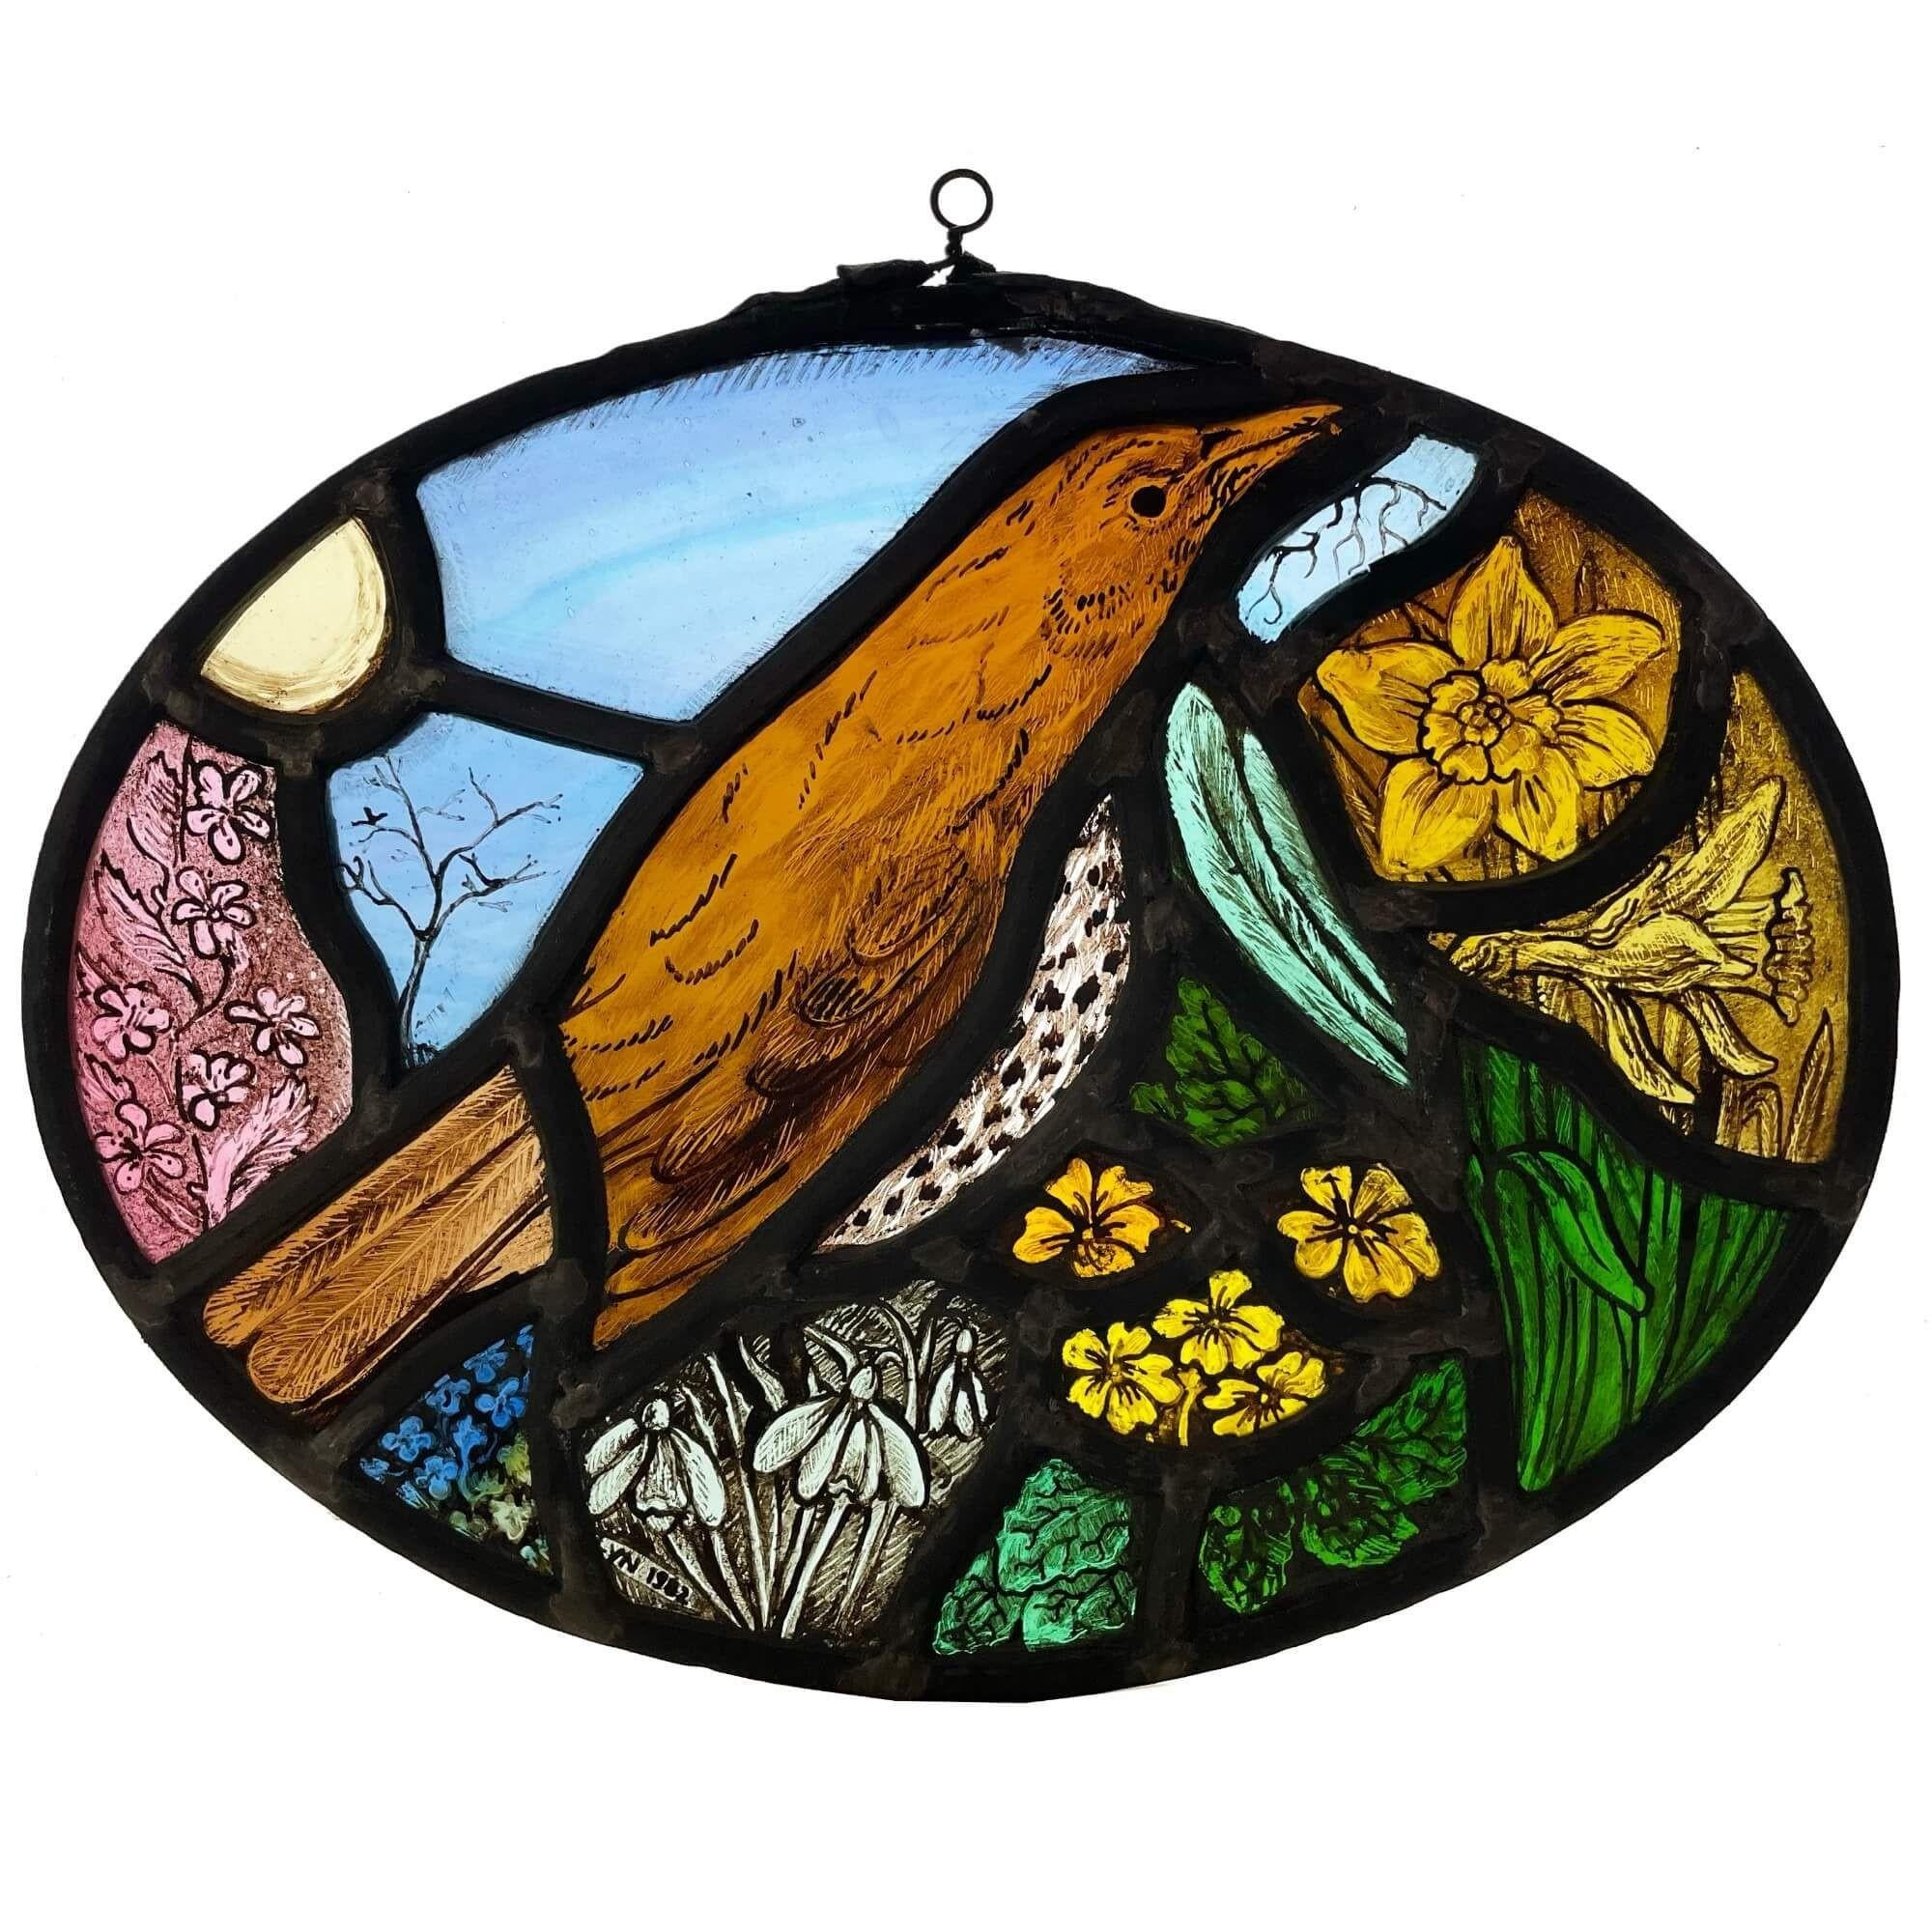 Dieses malerische Set aus 4 ovalen Glasfenstern des britischen Künstlers Lyn Claydon zeigt Szenen aus den vier Jahreszeiten. Sie stammen aus dem späten 20. Jahrhundert und zeigen die britische Tierwelt, darunter Vögel, eine Libelle, Schwalben,